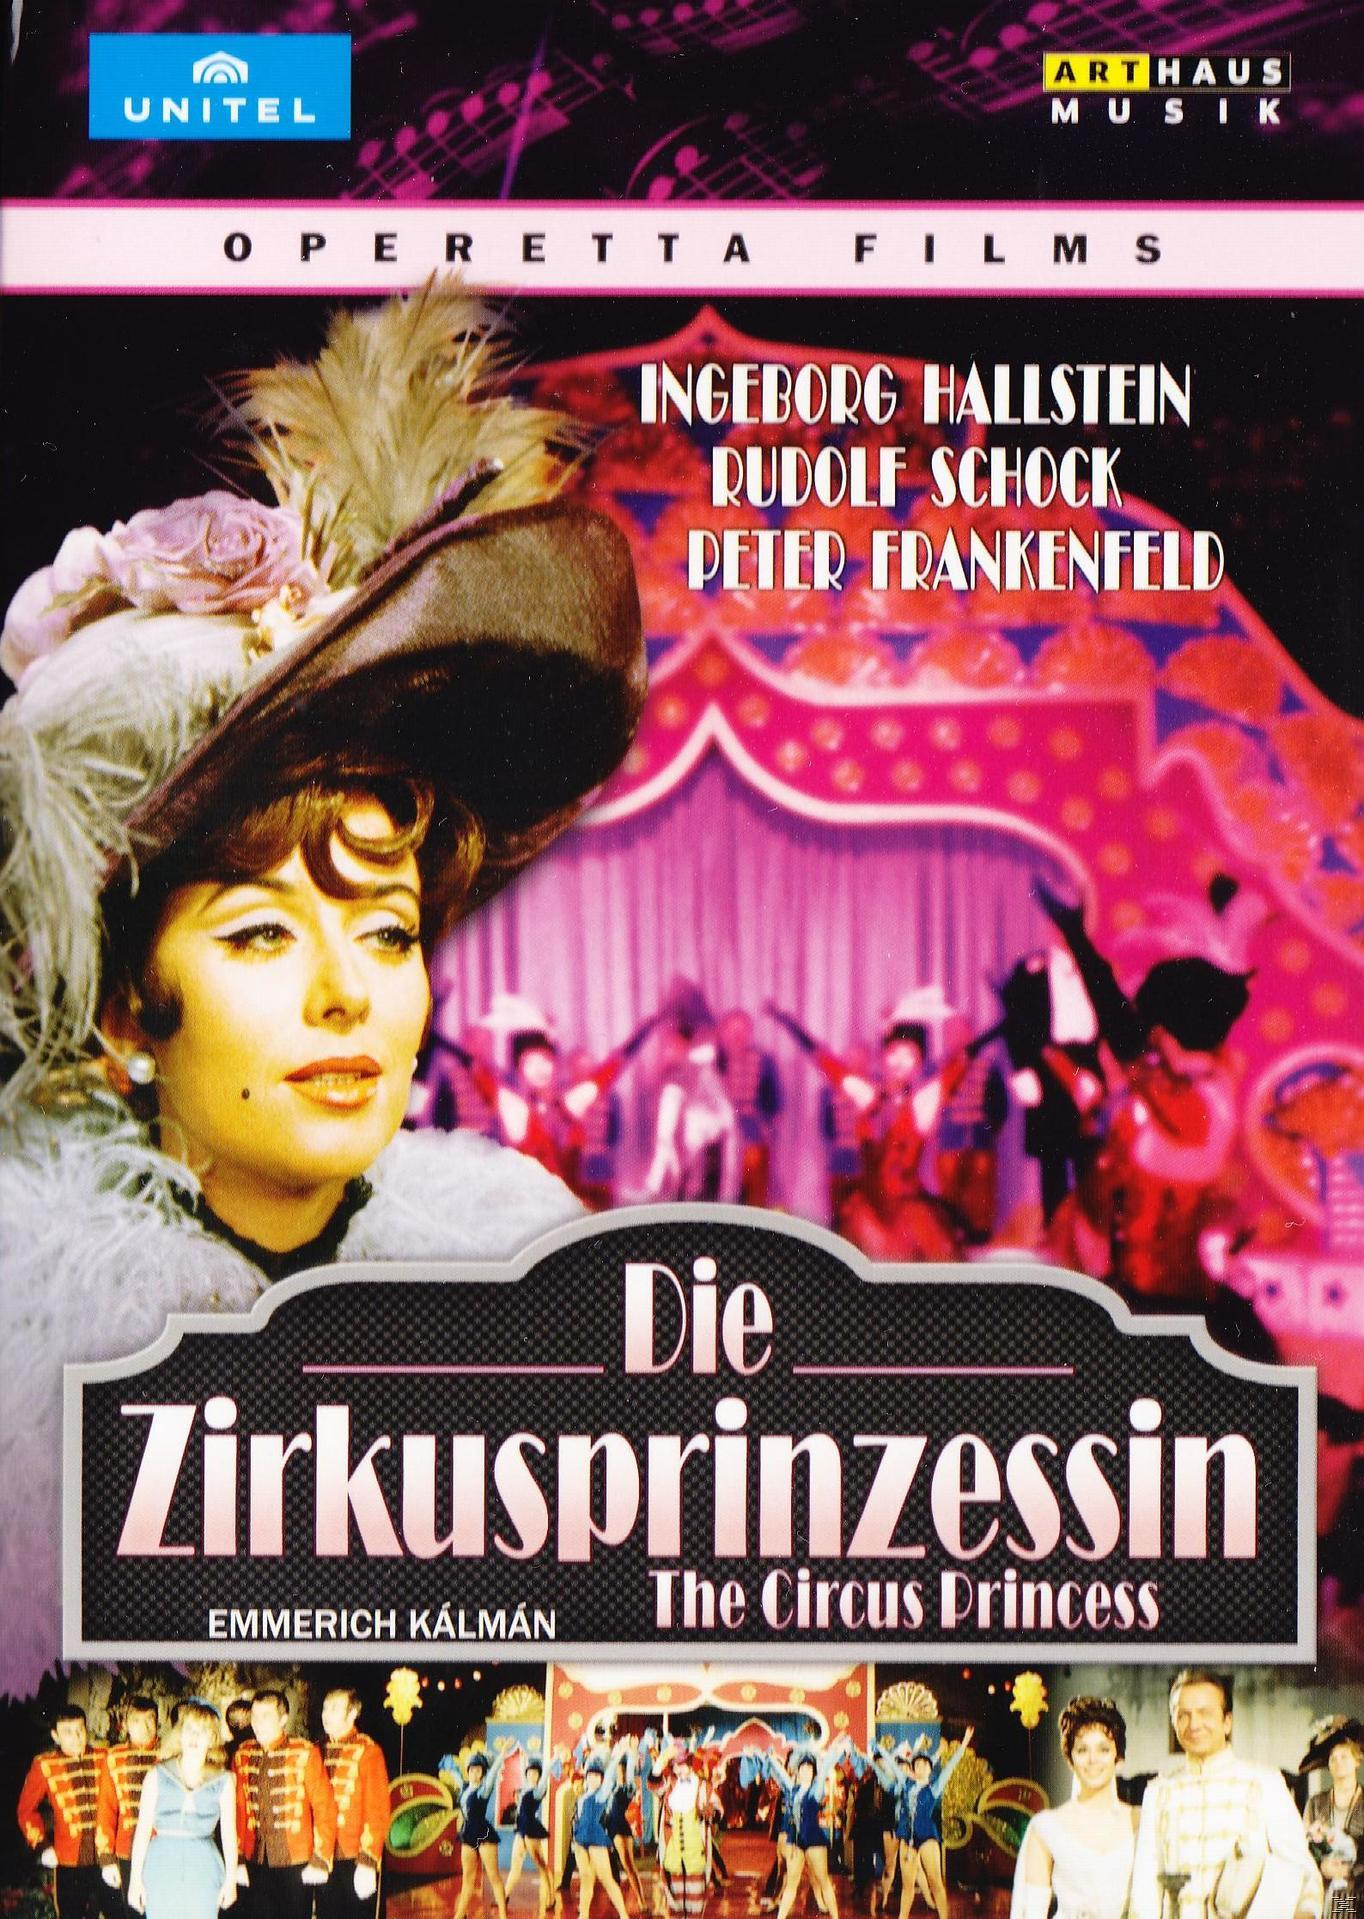 Ingeborg Hallenstein, Die - Zirkusprinzessin (DVD) Rudolf - Schock